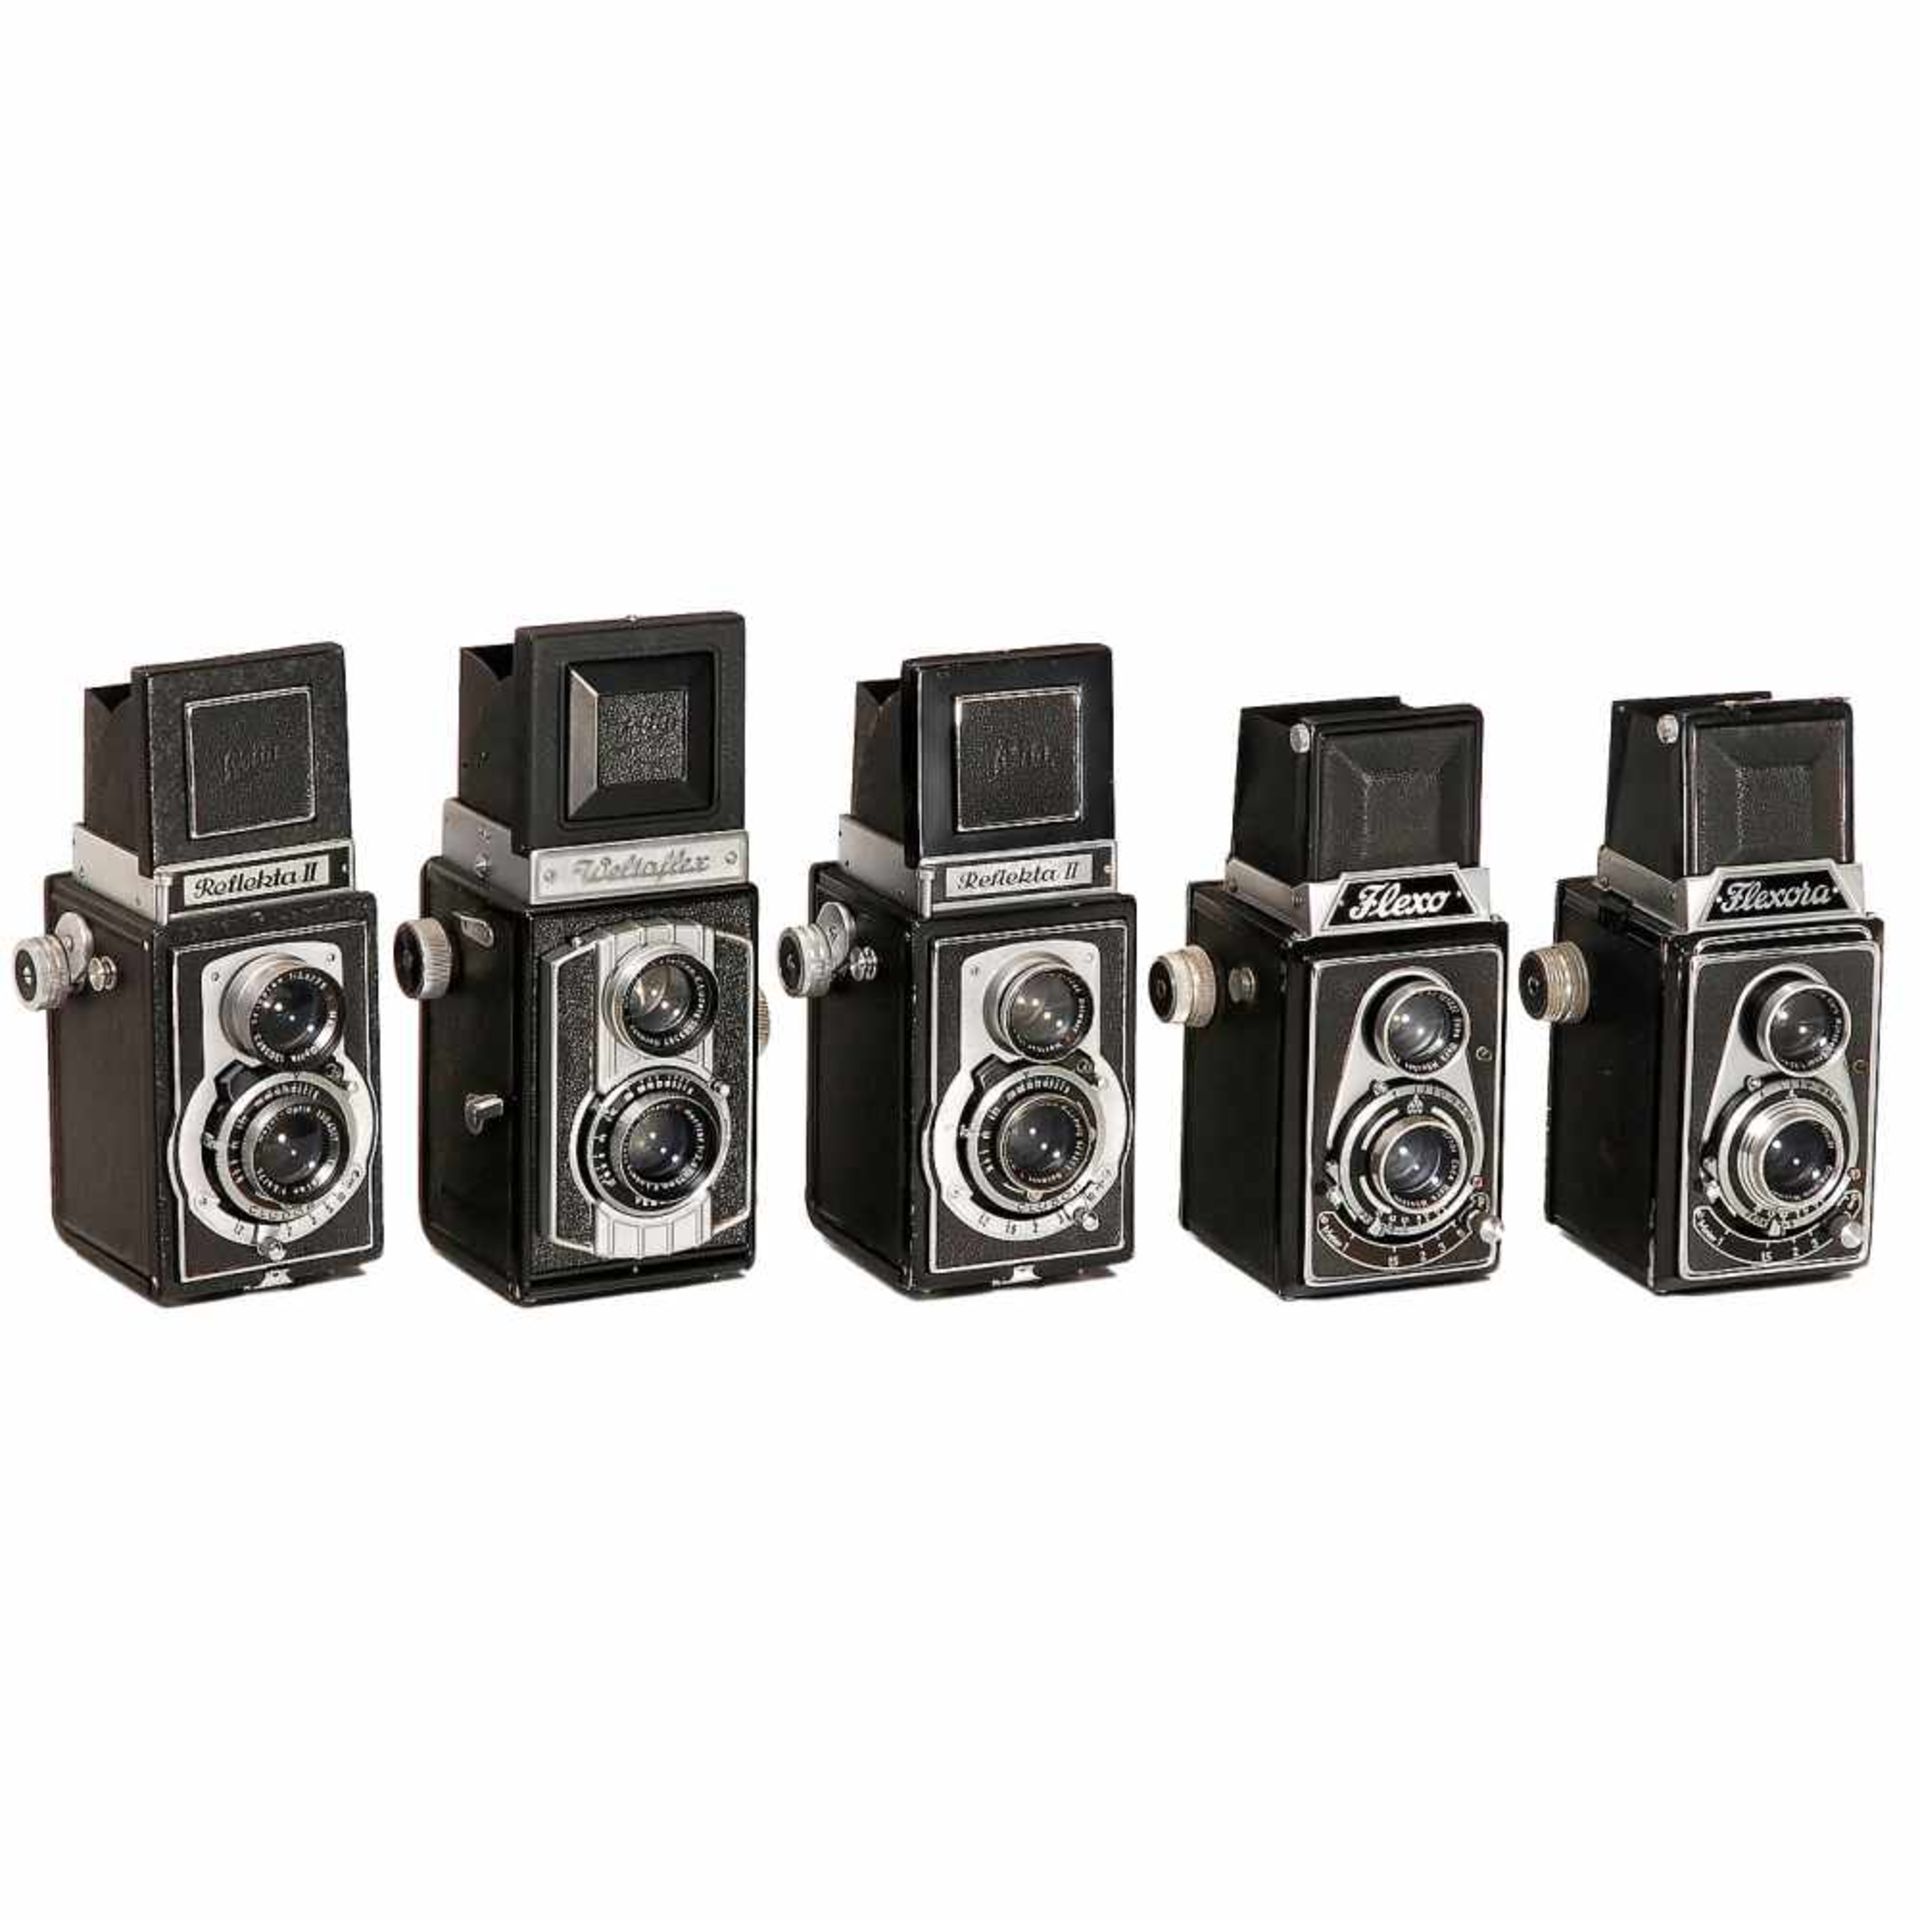 5 TLR 6x6cm Cameras1–2) Lippische Camerafabrik, Barntrup. Flexo, c. 1949, Ennar 3,5/7,5 cm in